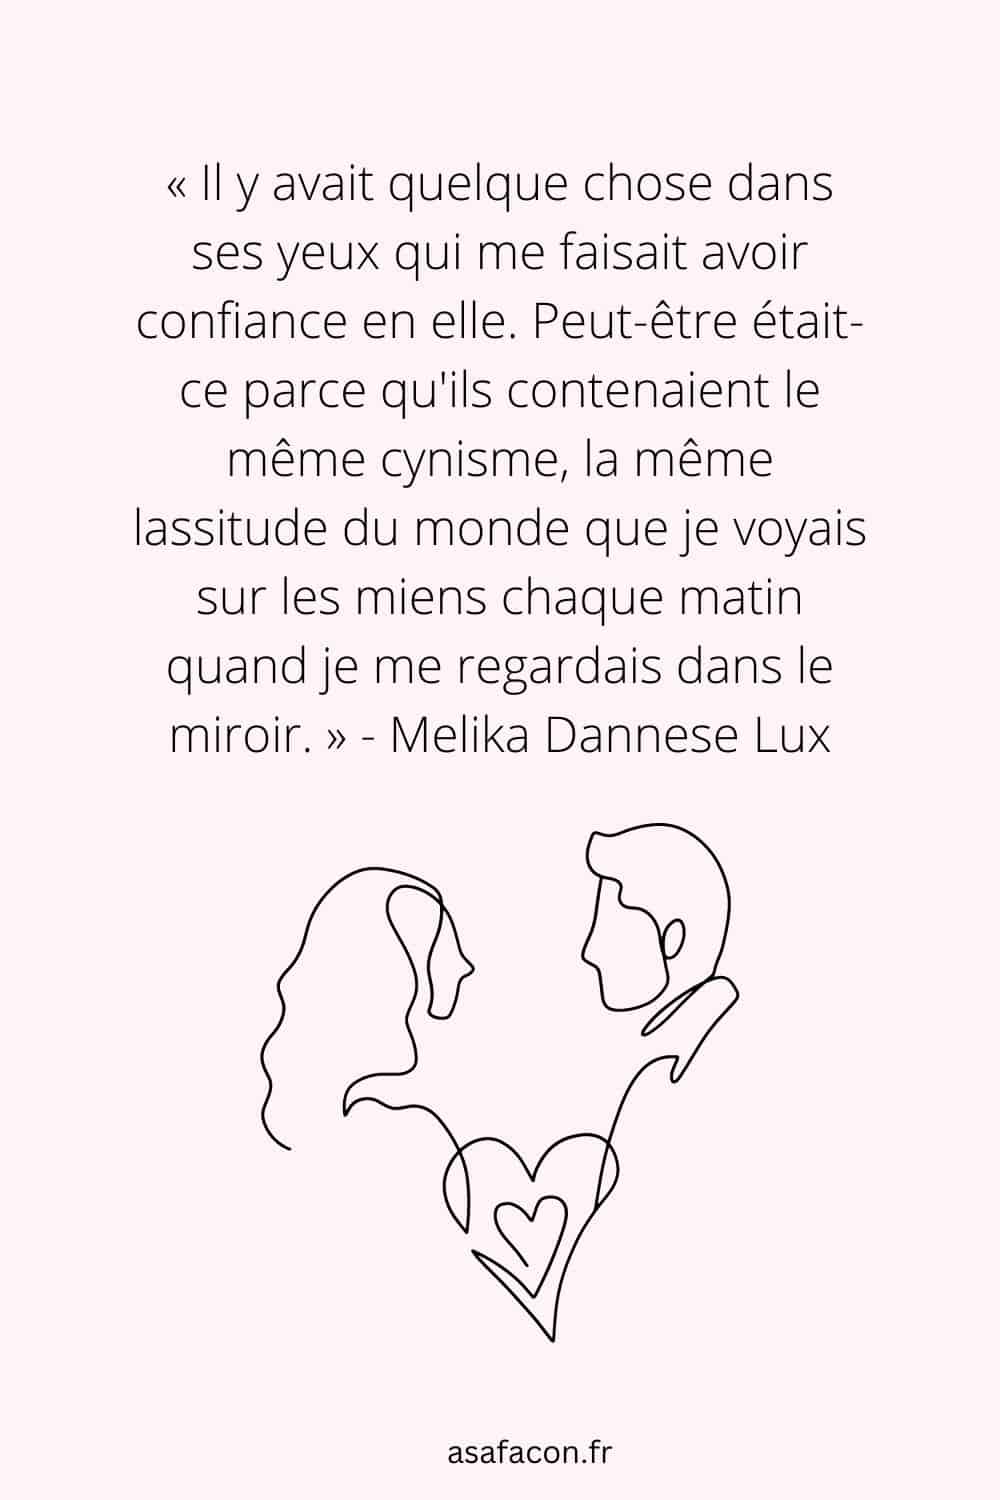 Citation de Melika Dannese Lux sur les flammes jumelles